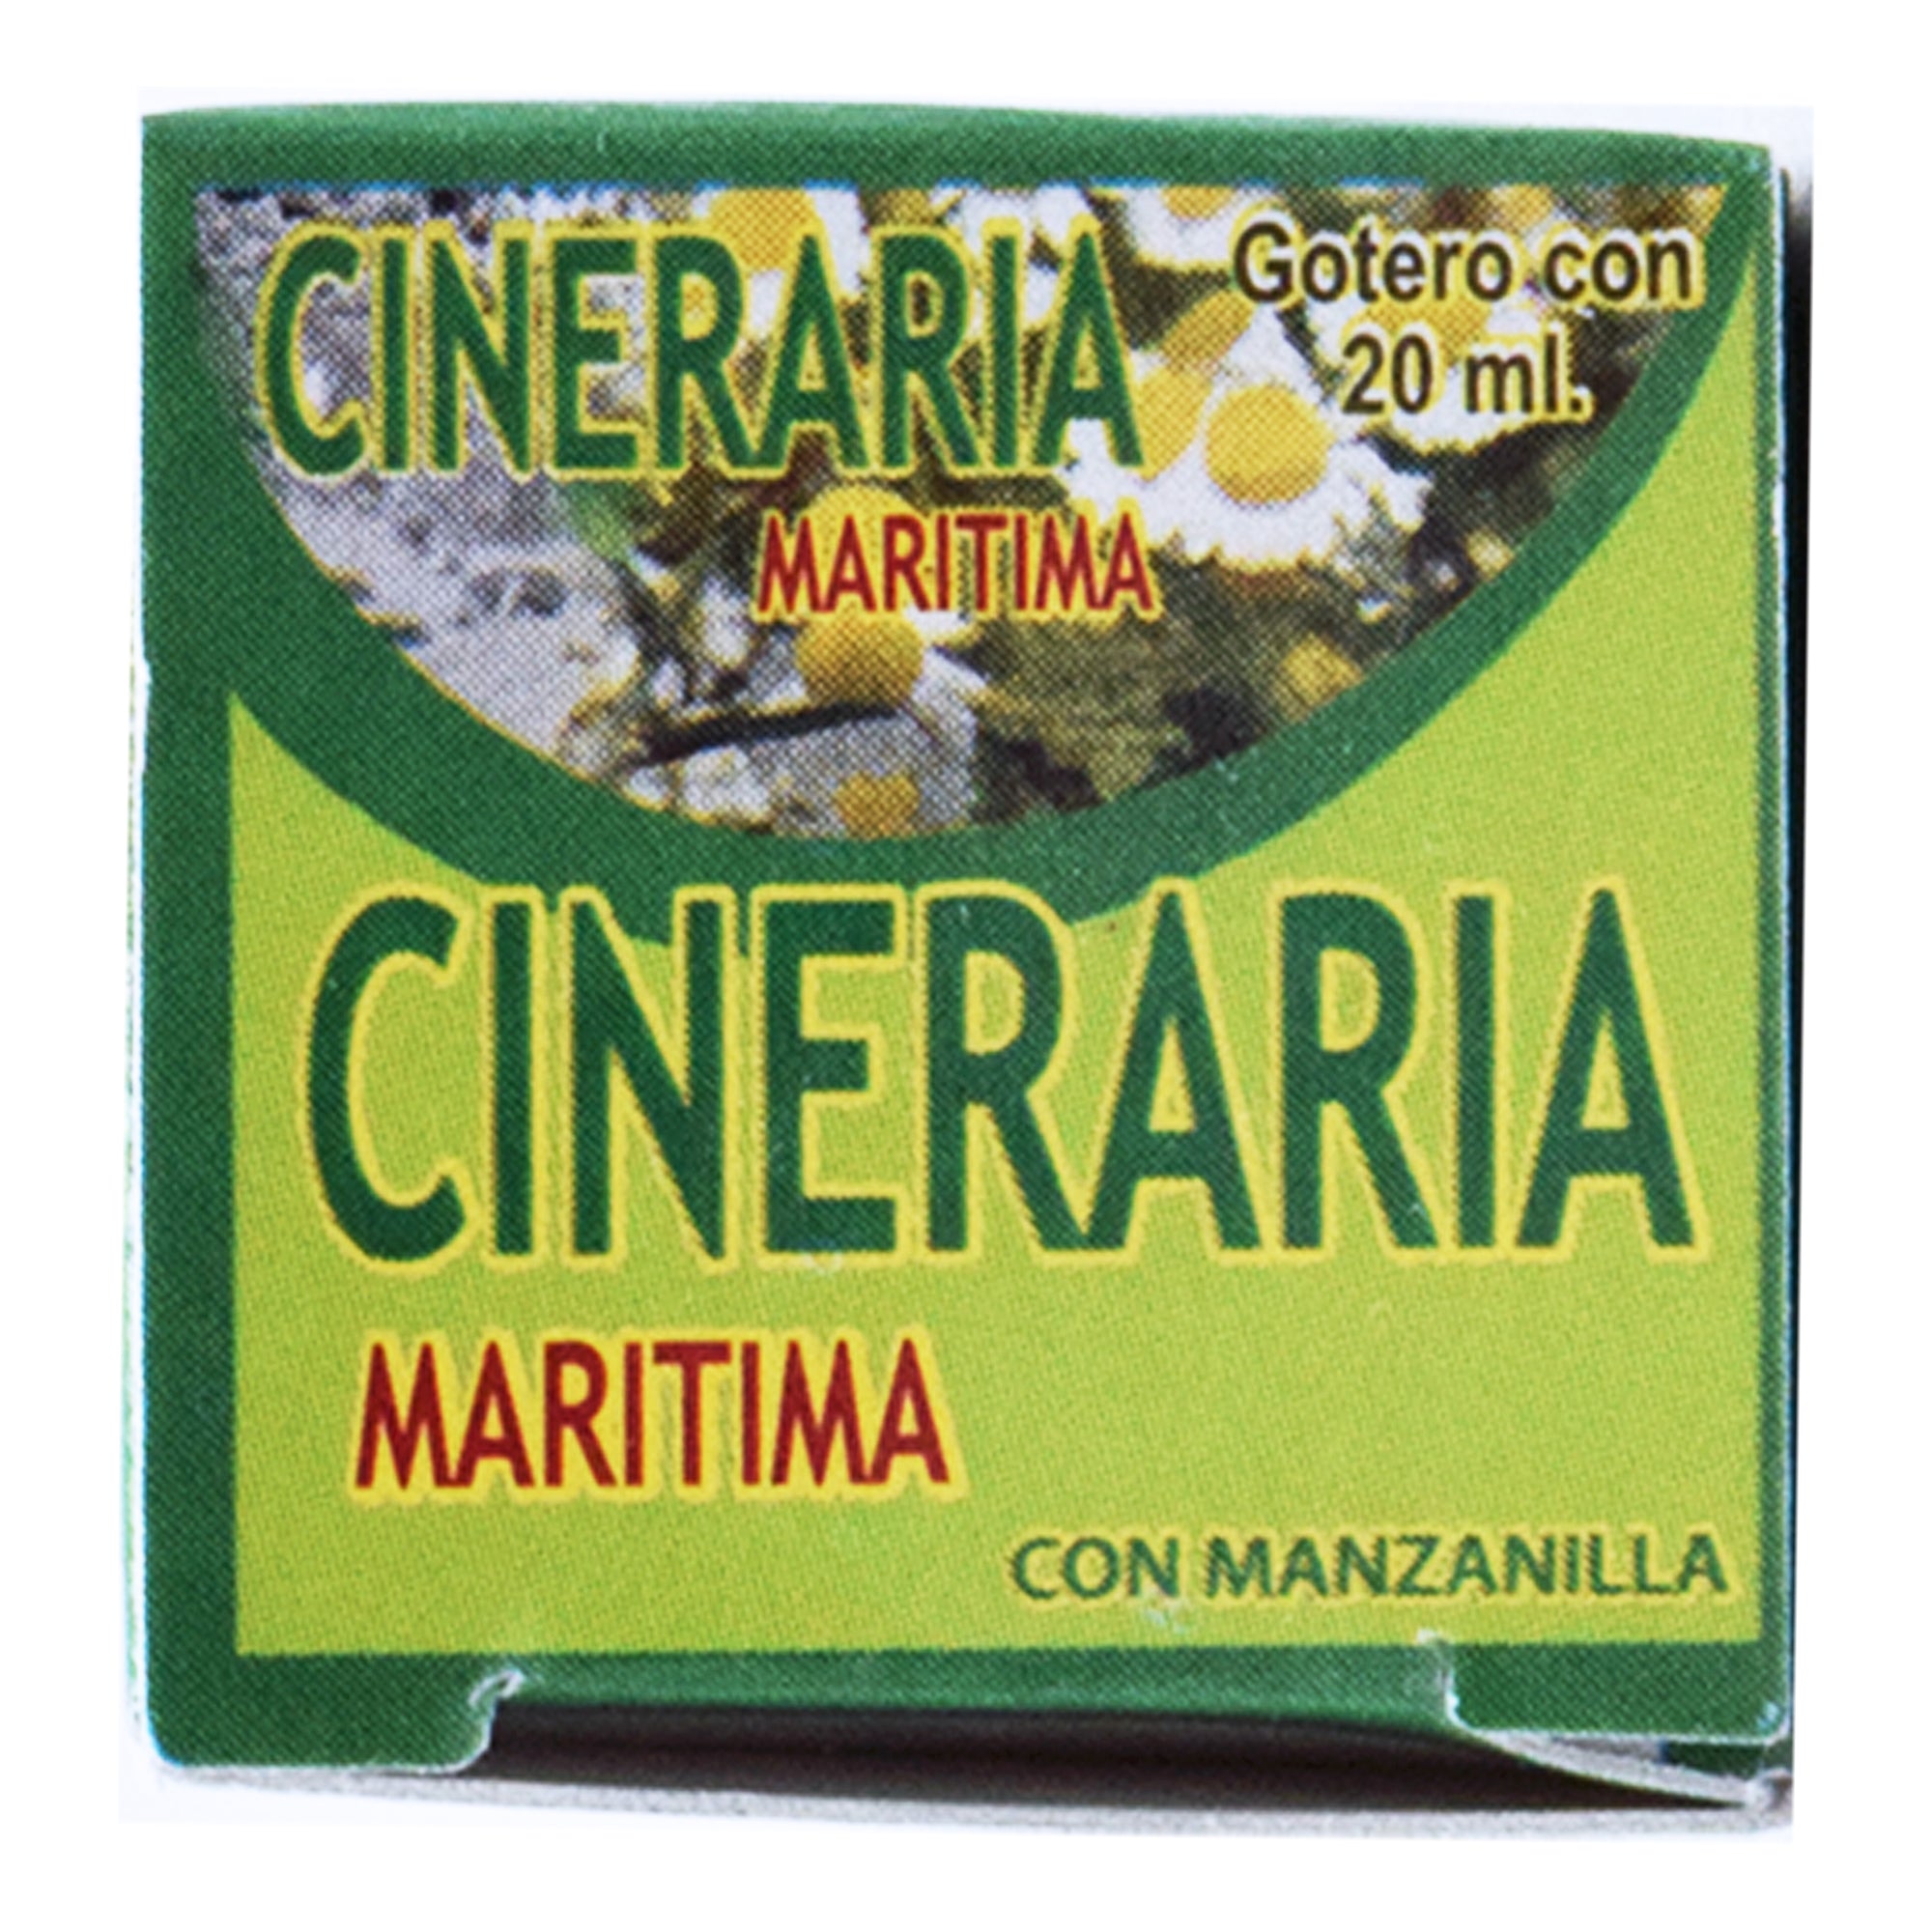 CINERARIA MARITIMA CON MANZANILLA 20 ML